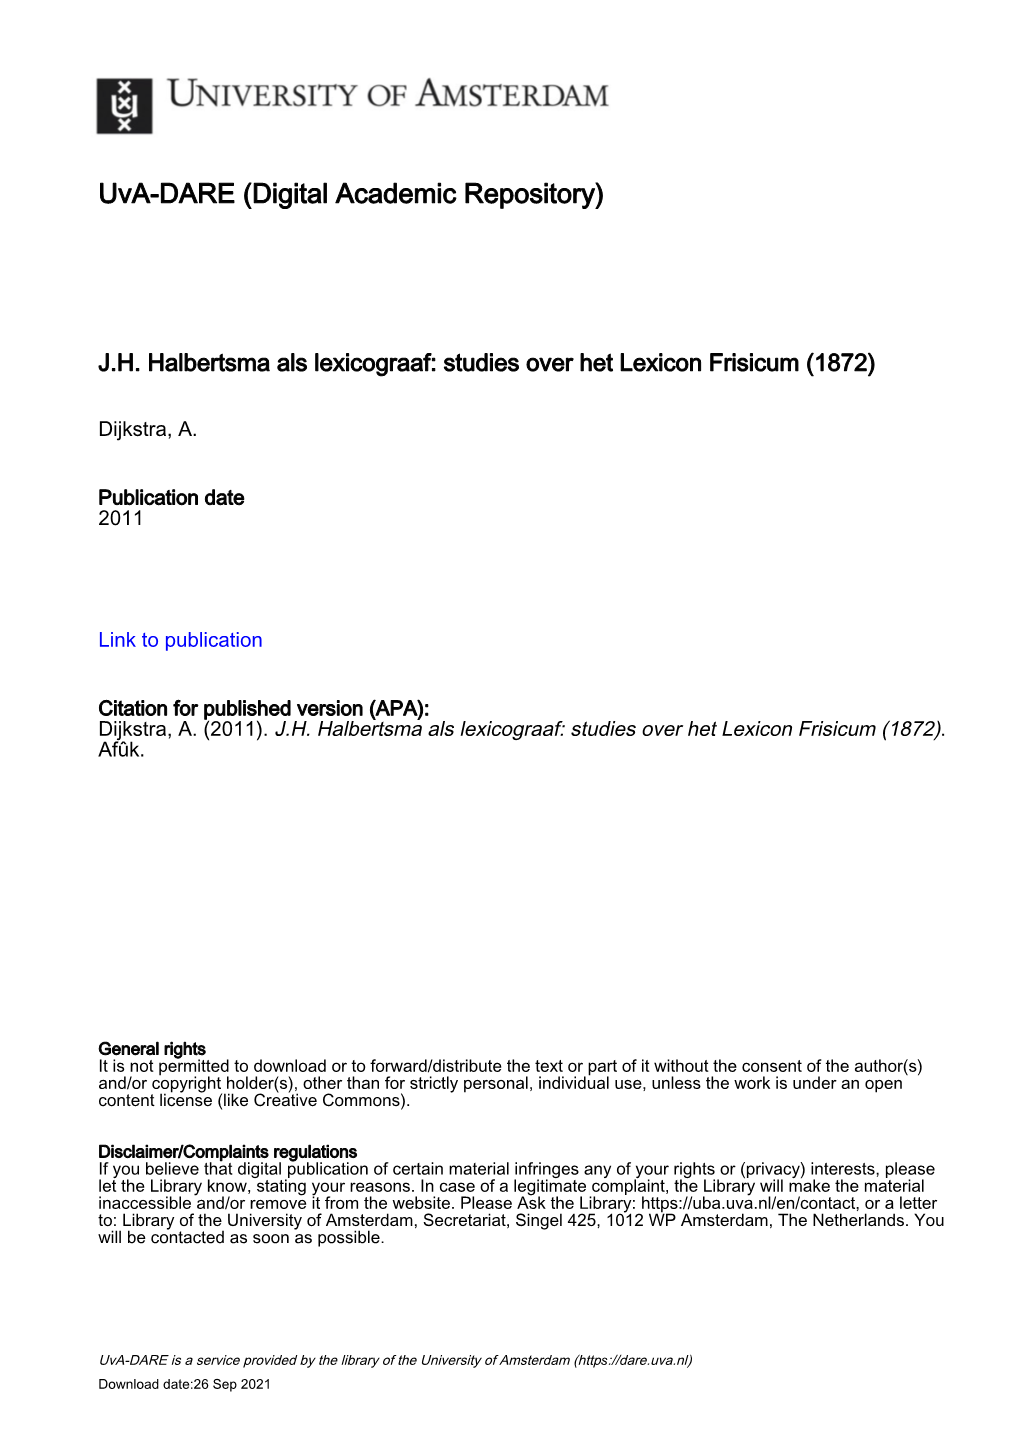 JH Halbertsma Als Lexicograaf: Studies Over Het Lexicon Frisicum